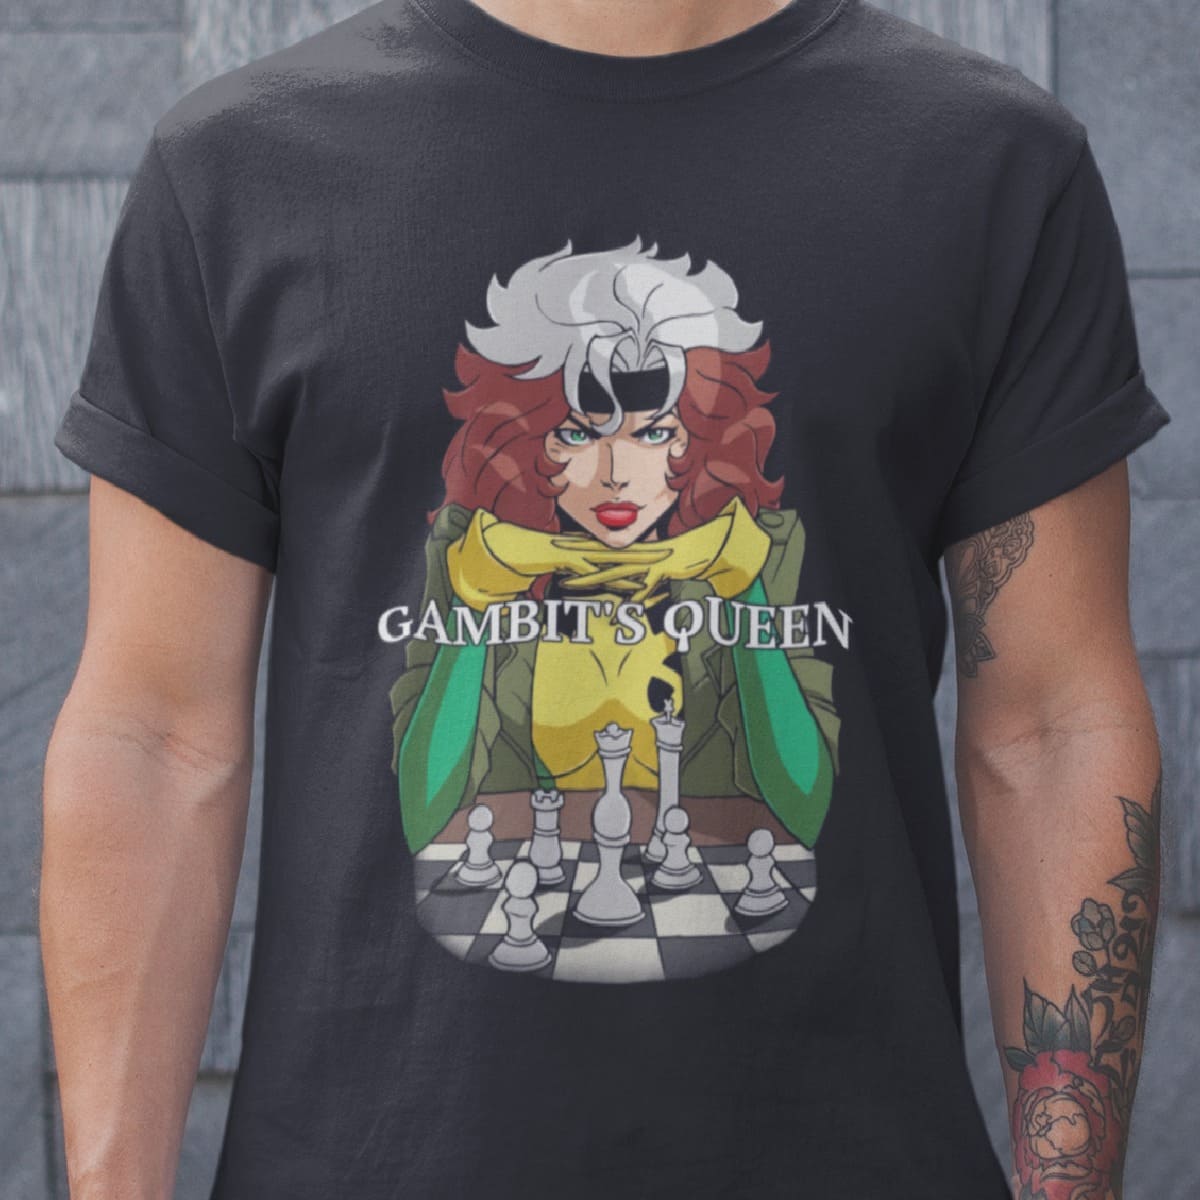 Gambit's queen - The queen's gambit, queen playing chess